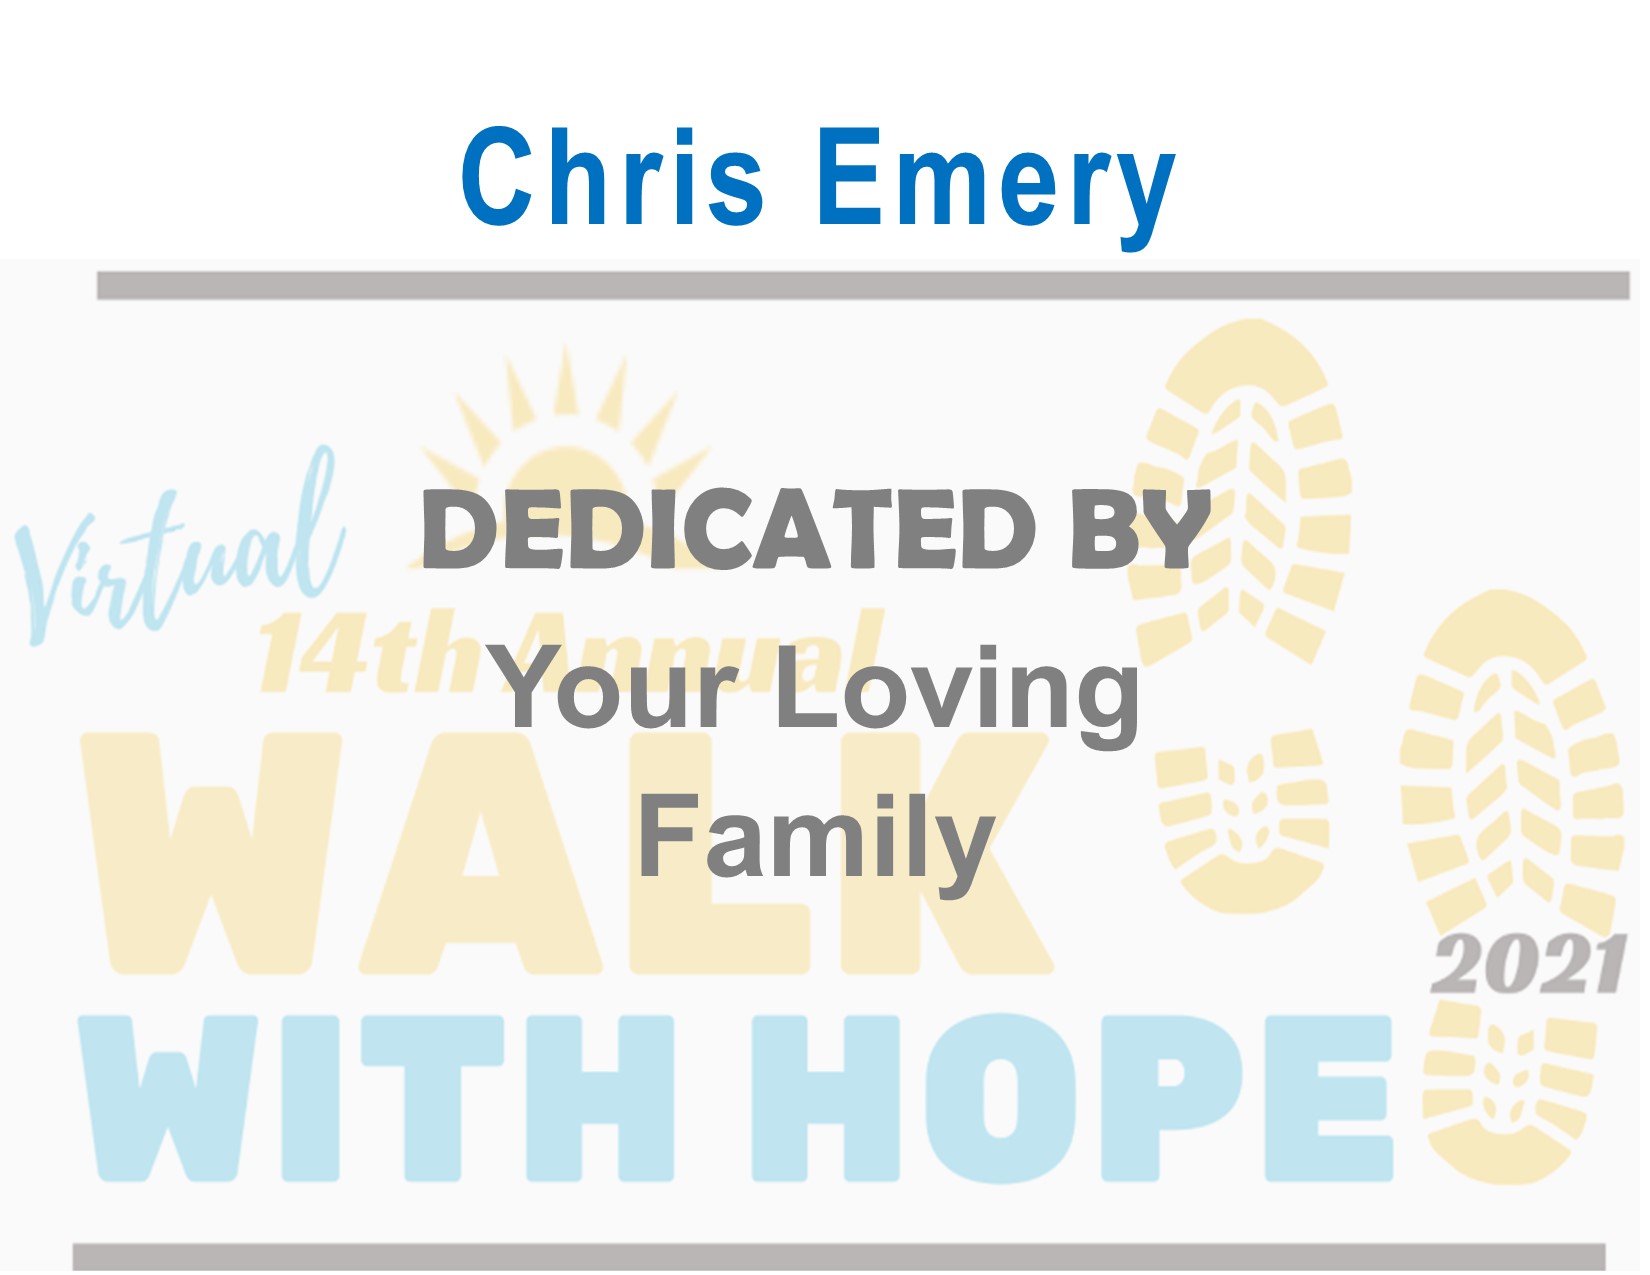 Chris Emery Loving Family.jpg